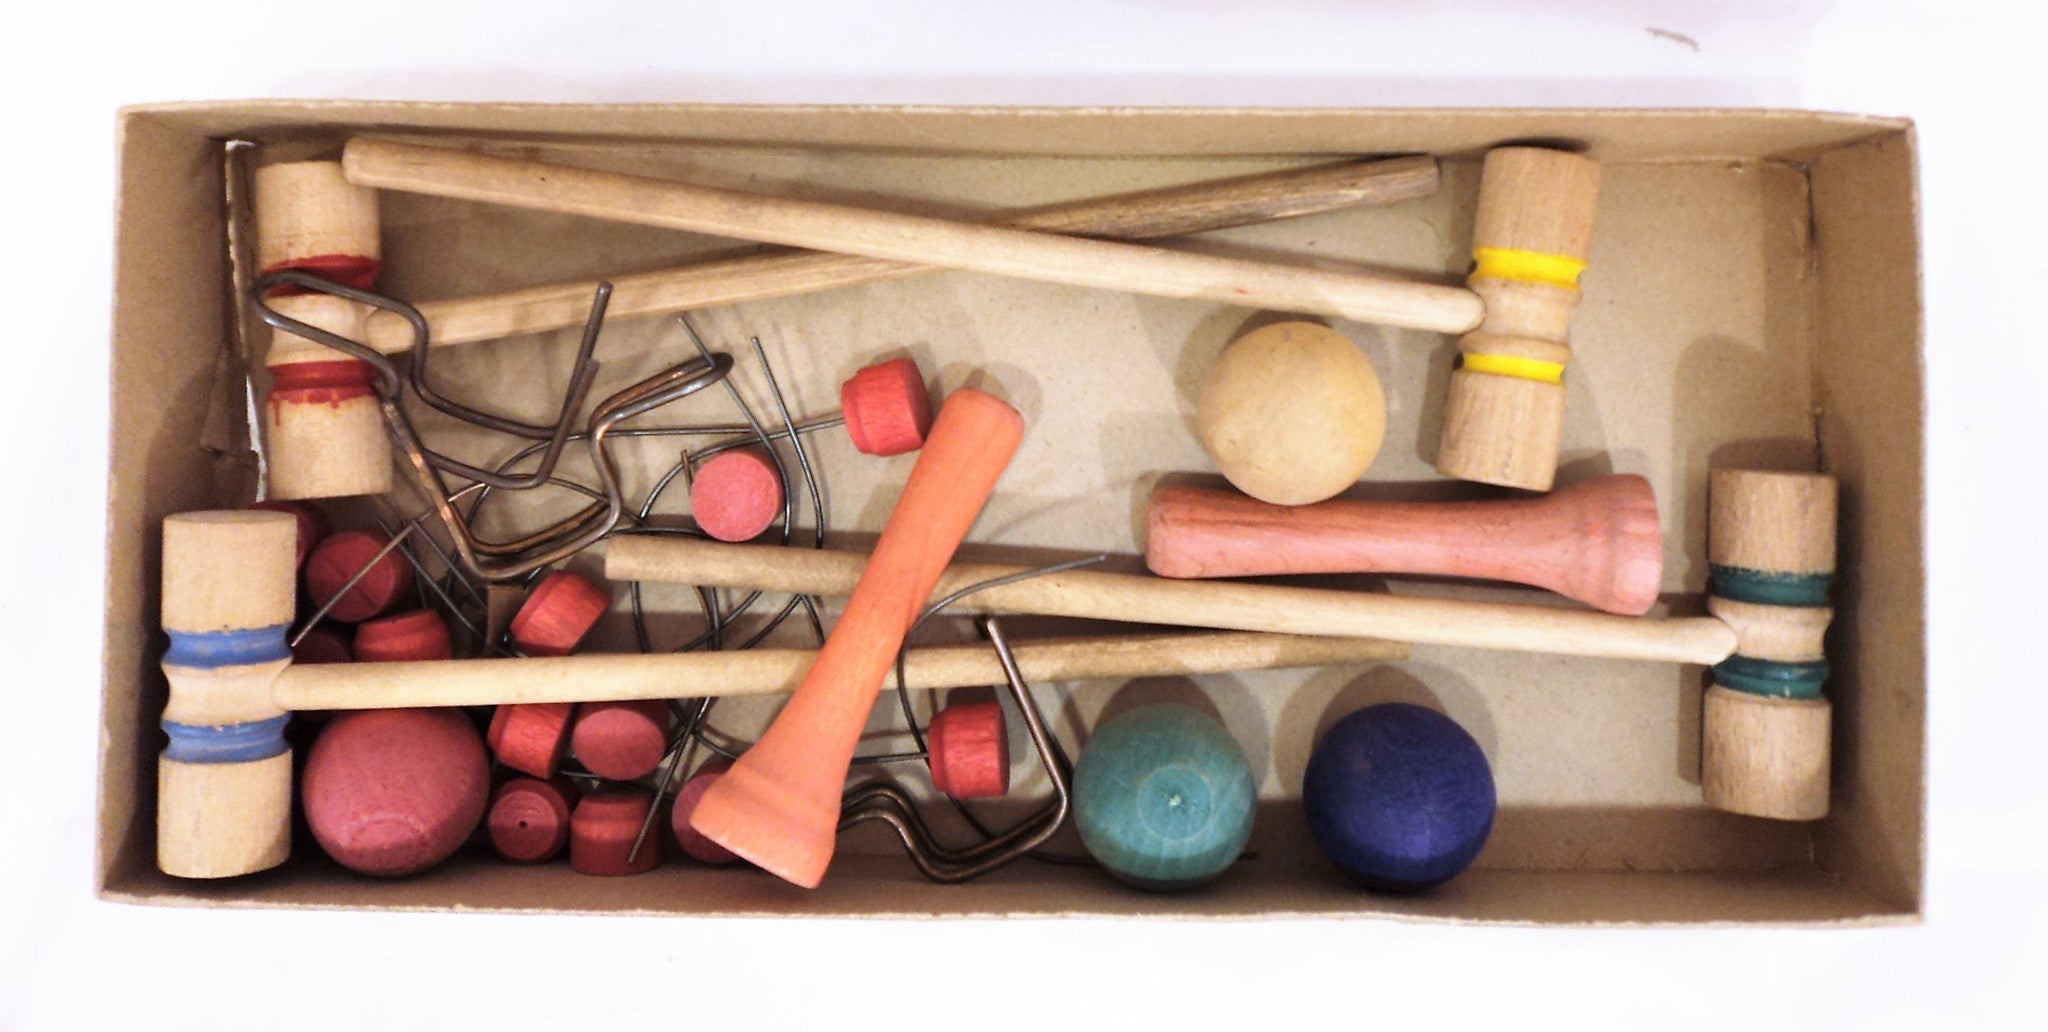 Antique Table Croquet Game Set